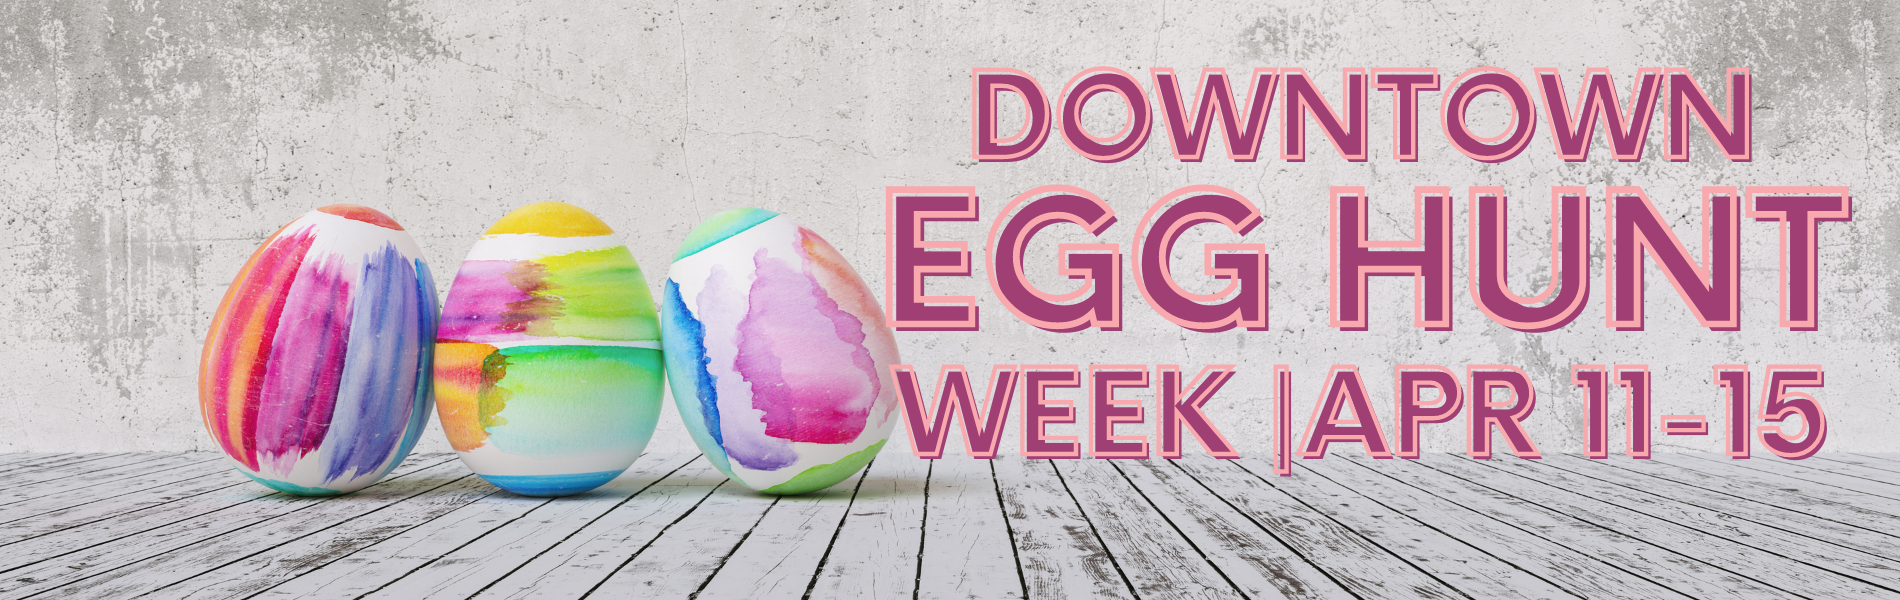 Egg Hunt Week